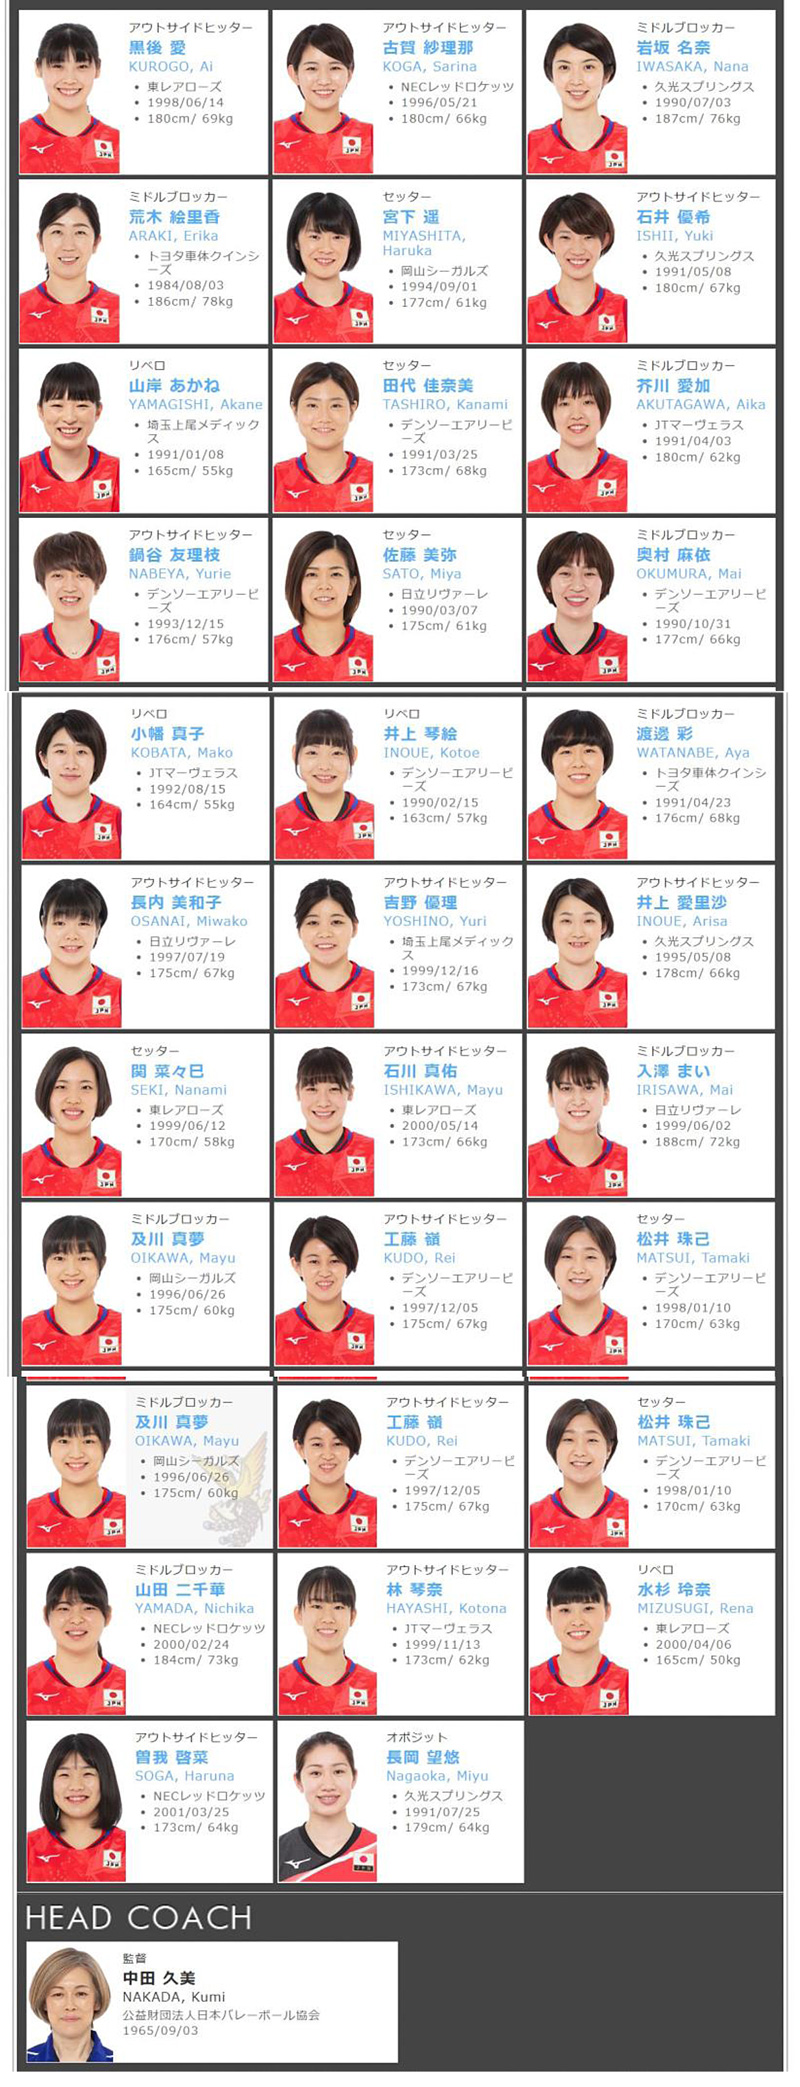 2020年度全日本代表女子バレーボール,火の鳥NIPPON